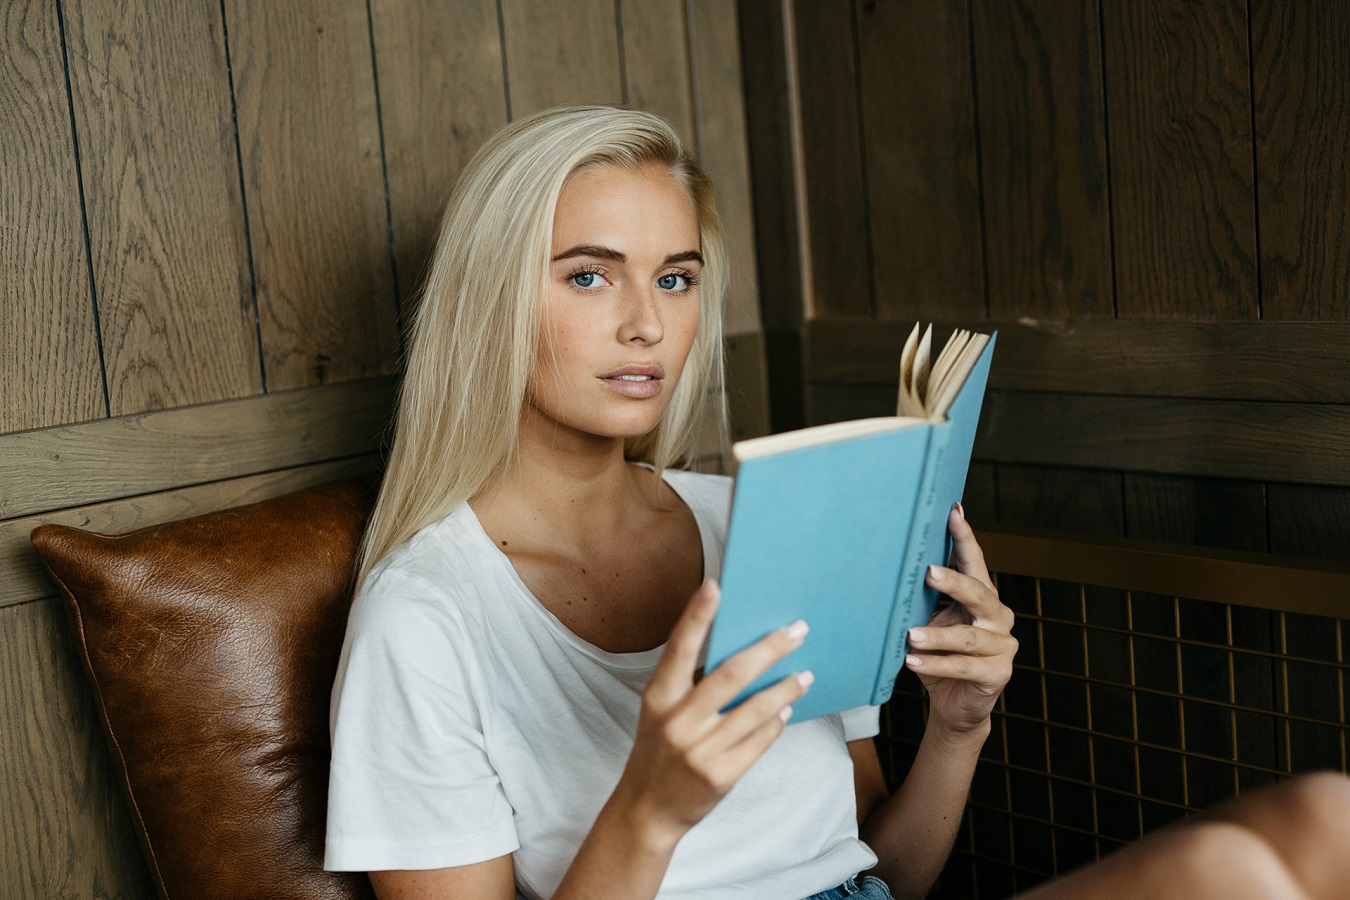 Elvira Backteman Model Women Blonde Long Hair T Shirt White Tops Reading Book In Hand 1350x900